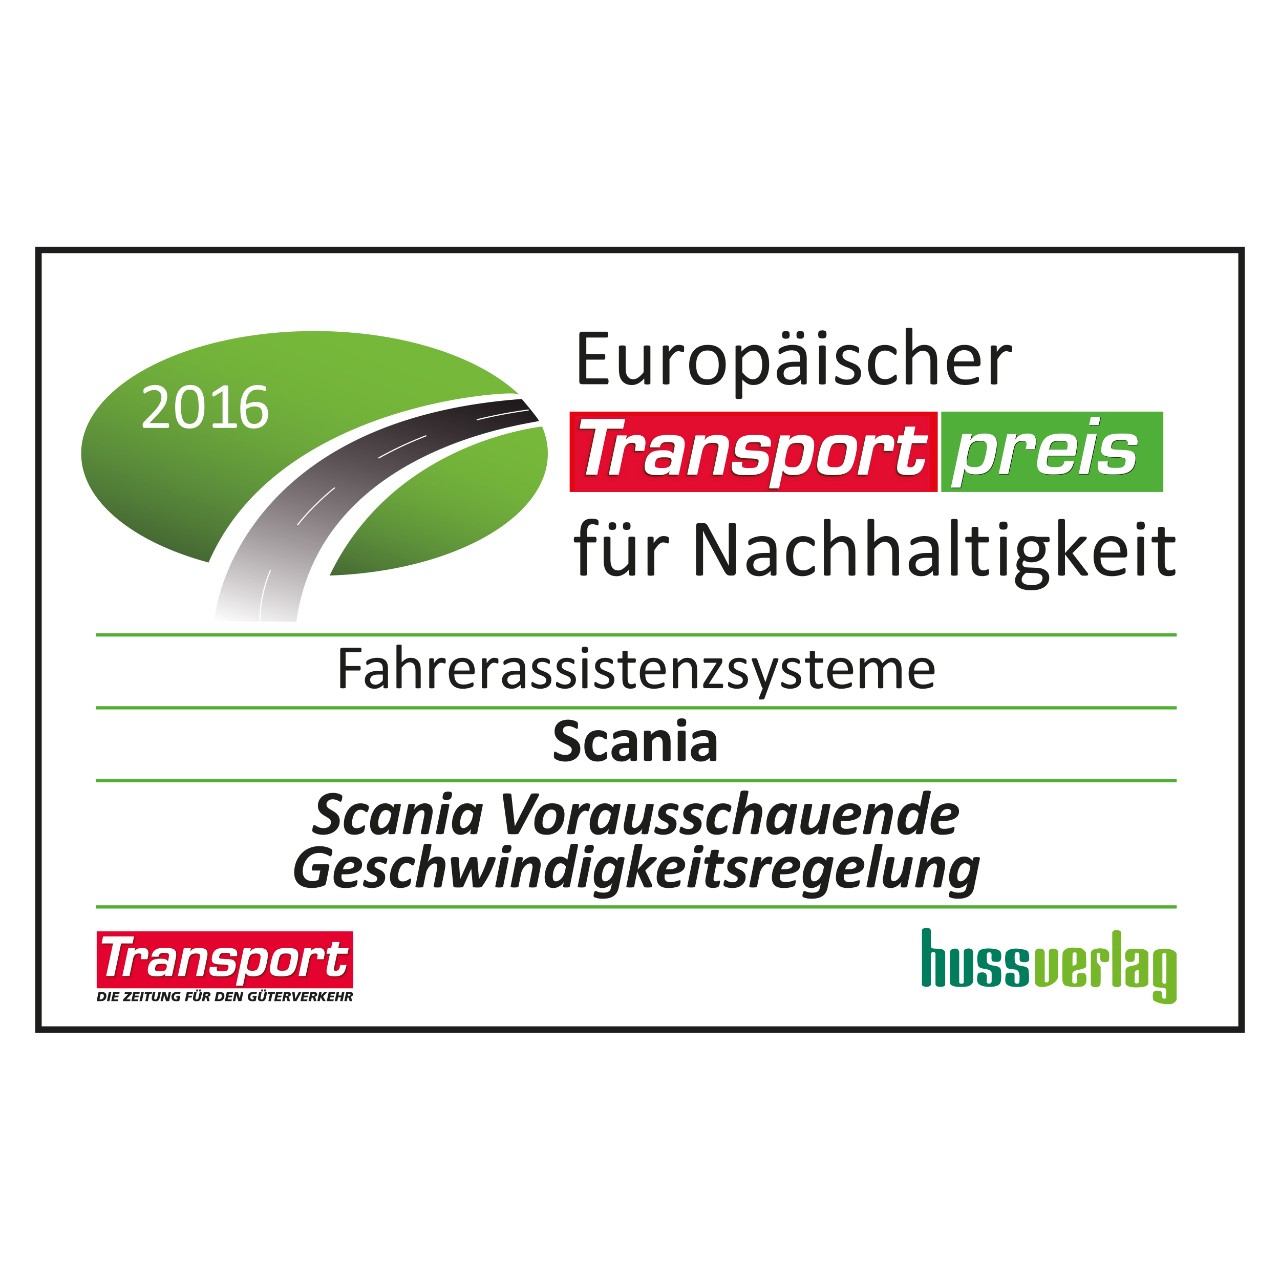 Europäischer Transportpreis für Nachhaltigkeit 2016